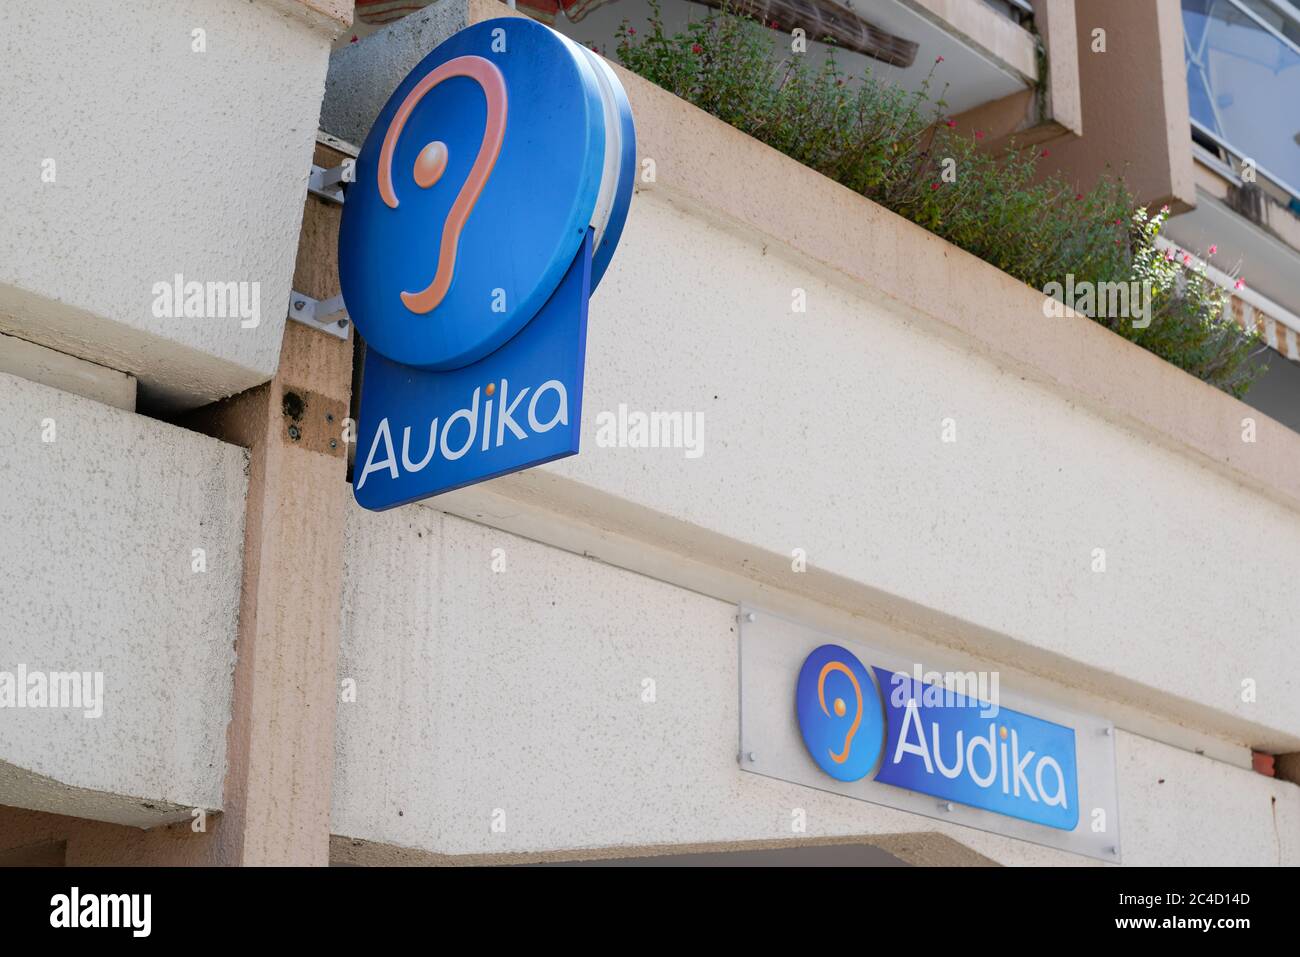 Audika Banque de photographies et d'images à haute résolution - Alamy